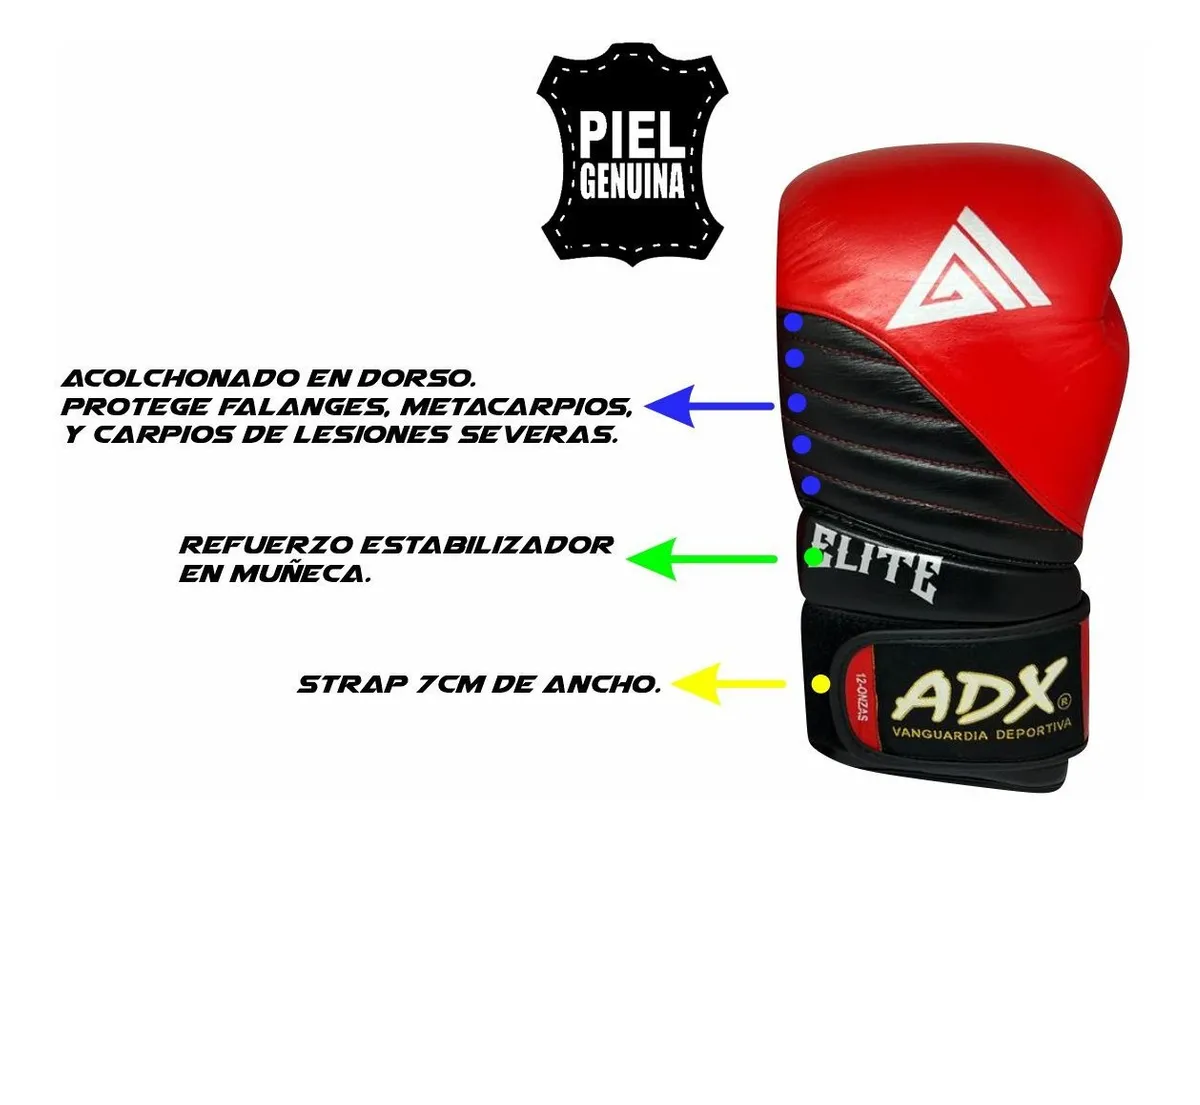 Protector Bucal Boxeo, Termoformable, Sencillo, ADX, Kick Boxing